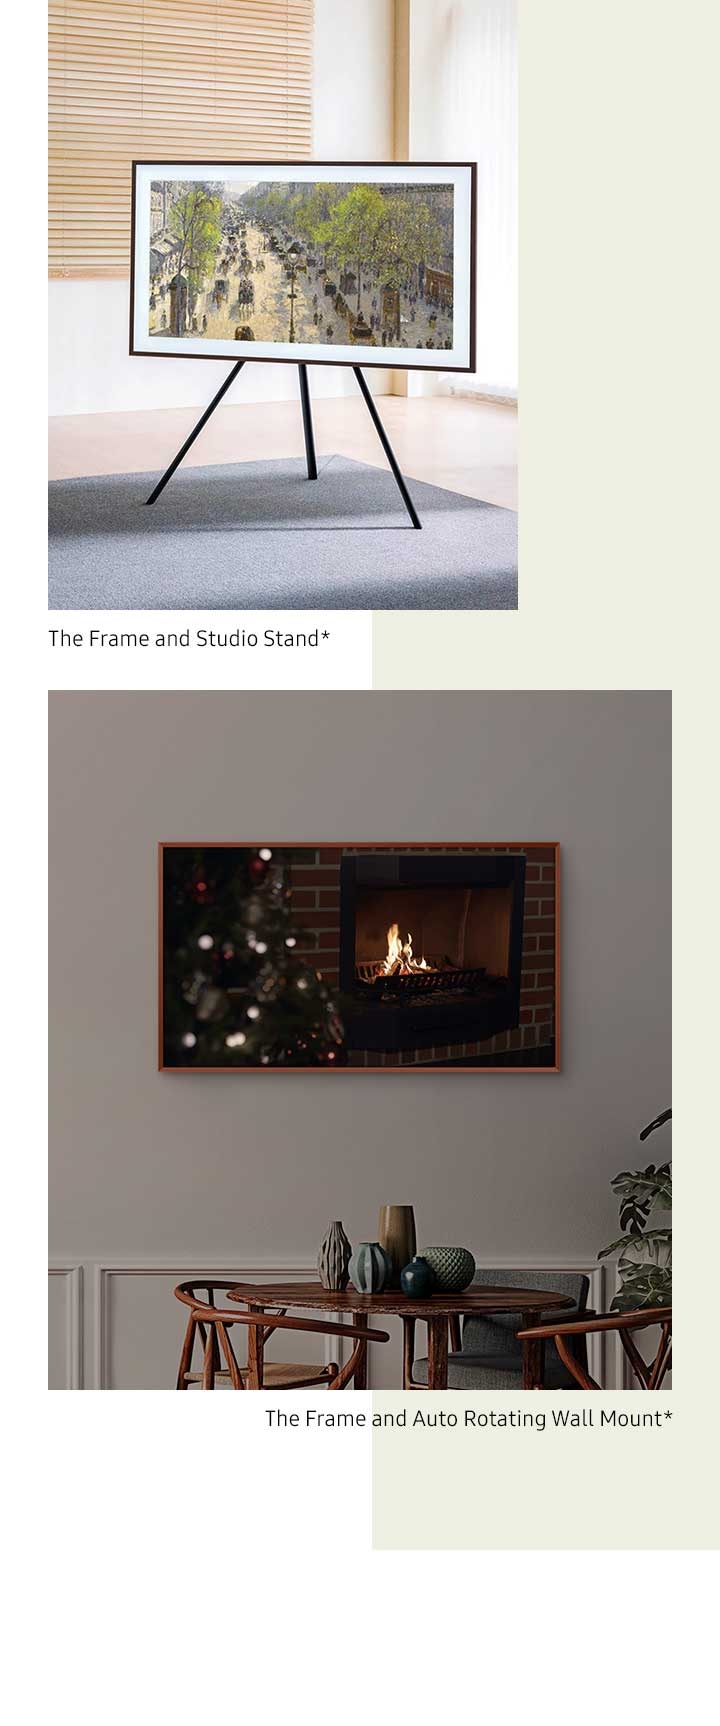 The Frame sur une fixation Auto Rotating Wall Mount pivote du mode paysage au mode portrait*. The Frame est fixé sur un Studio Stand*.